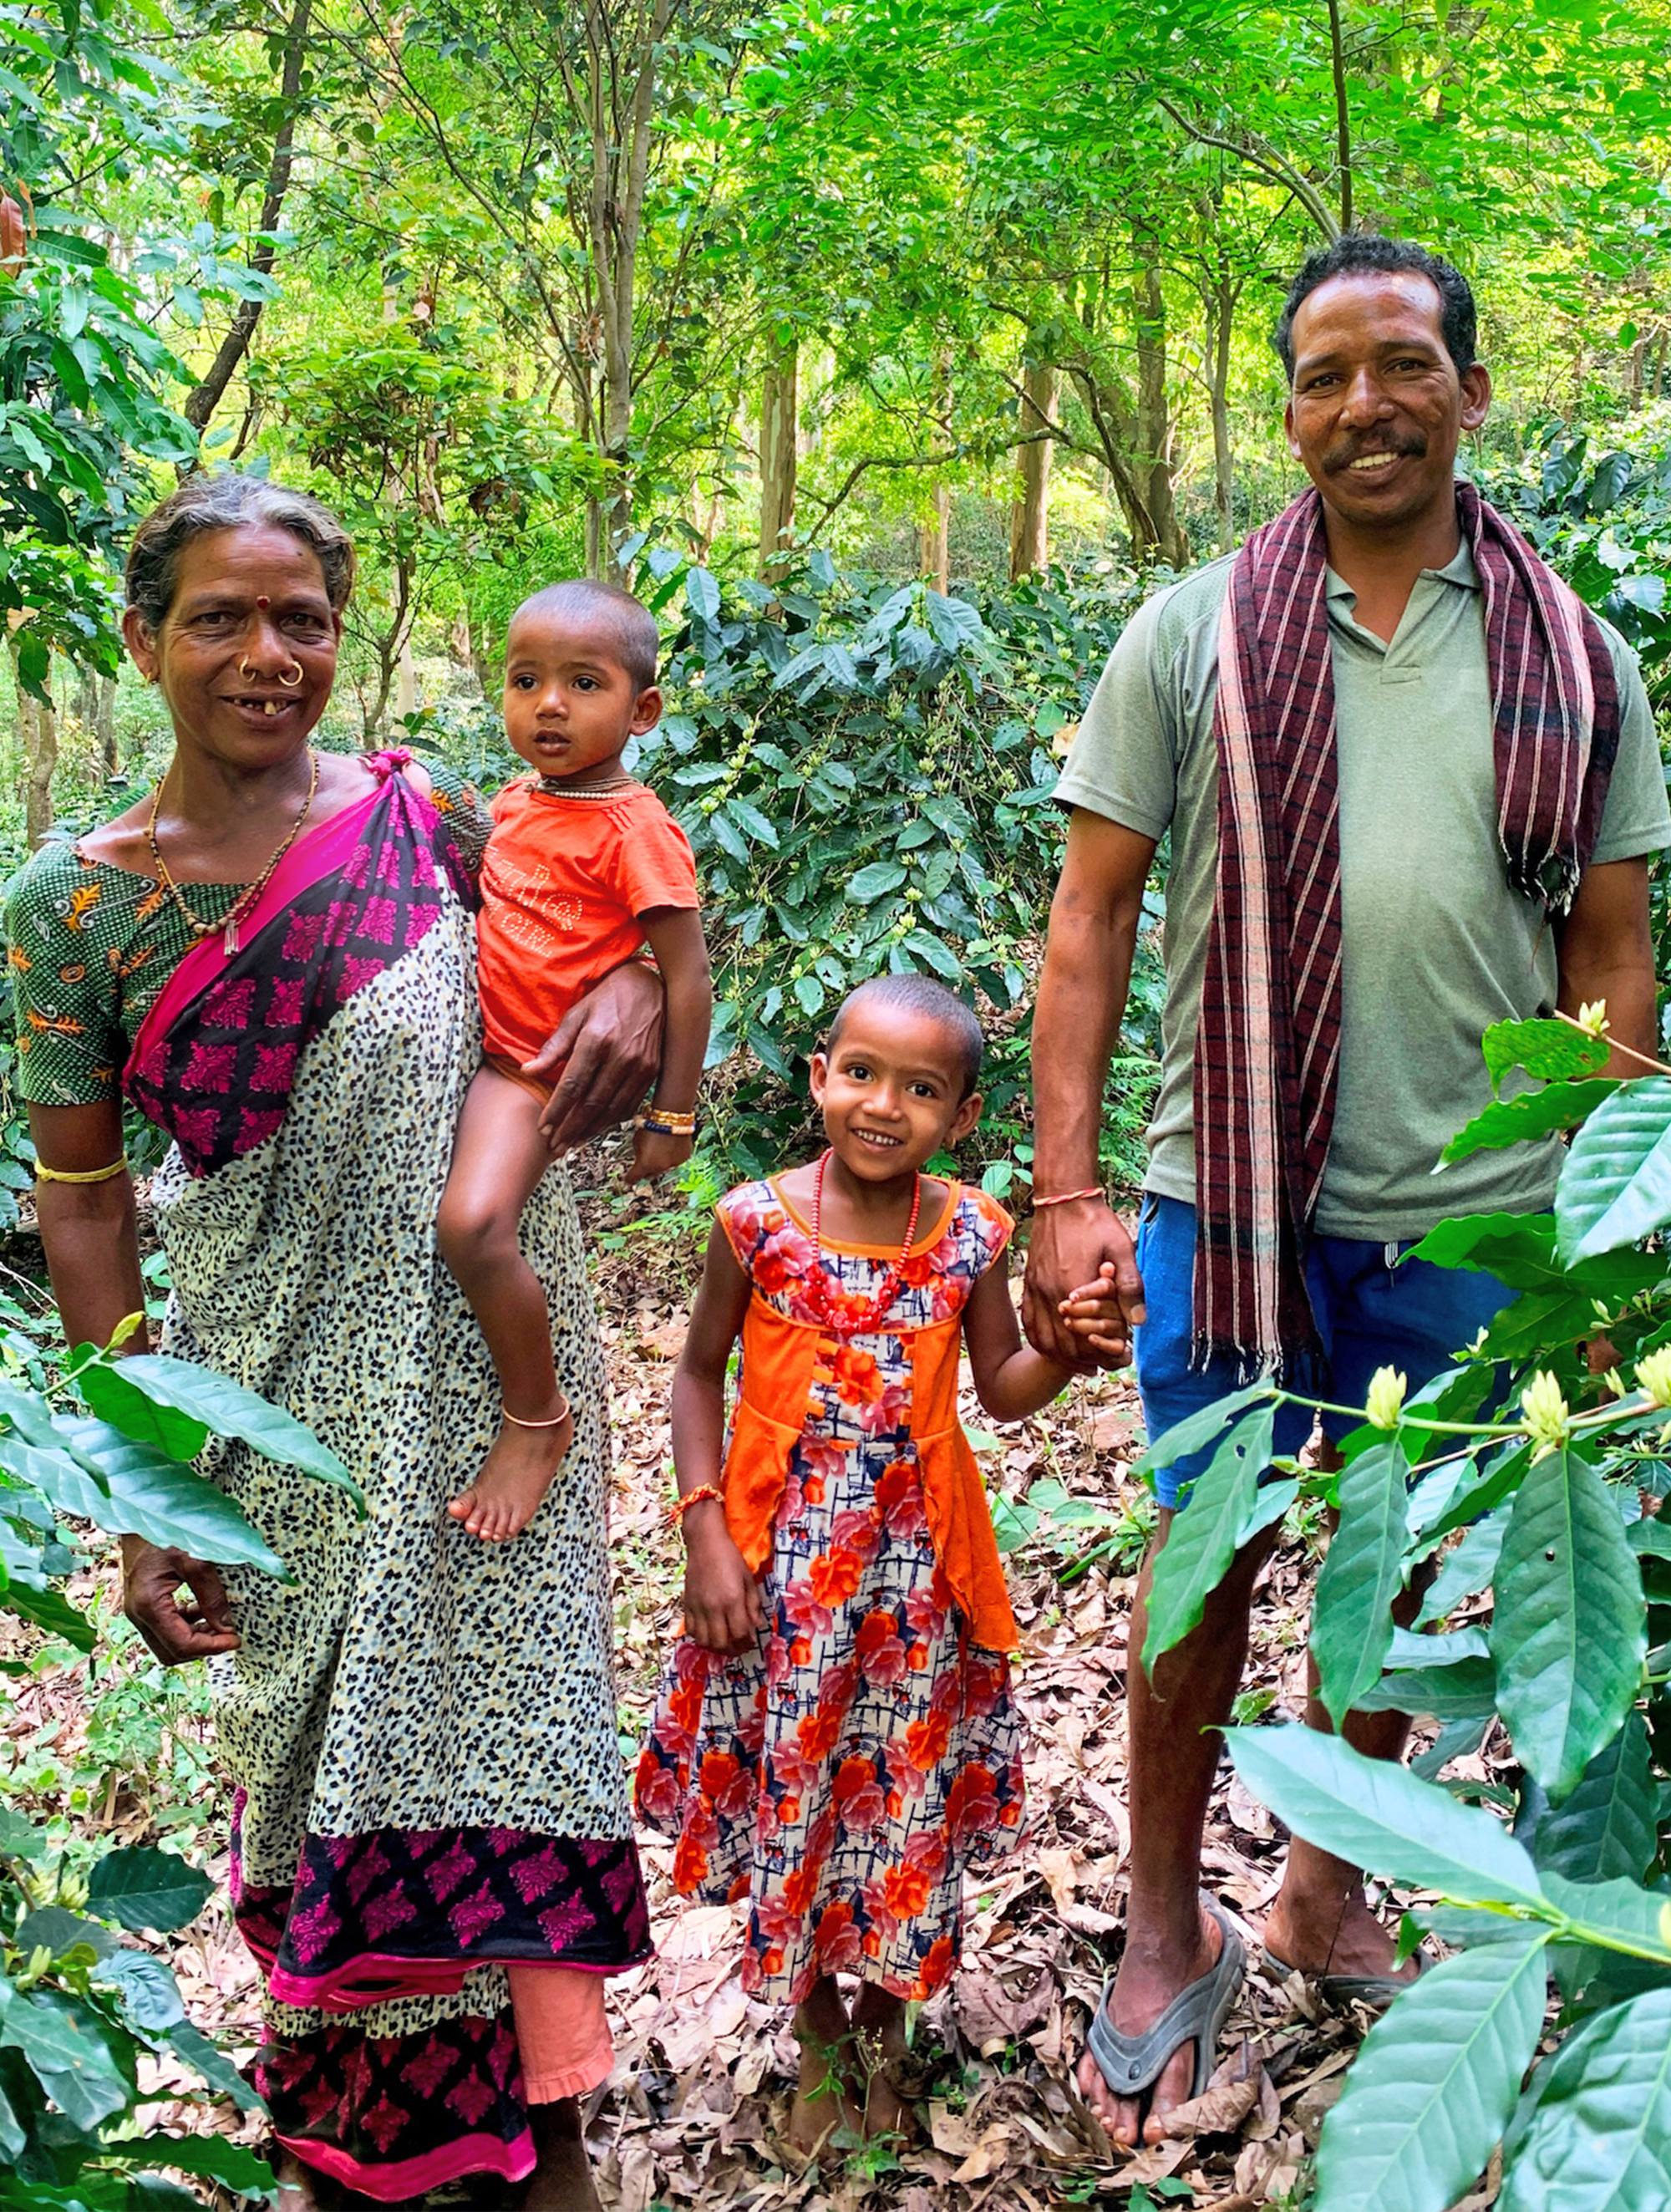 Musiri Familie in Wald umgeben von Kaffeebäumen